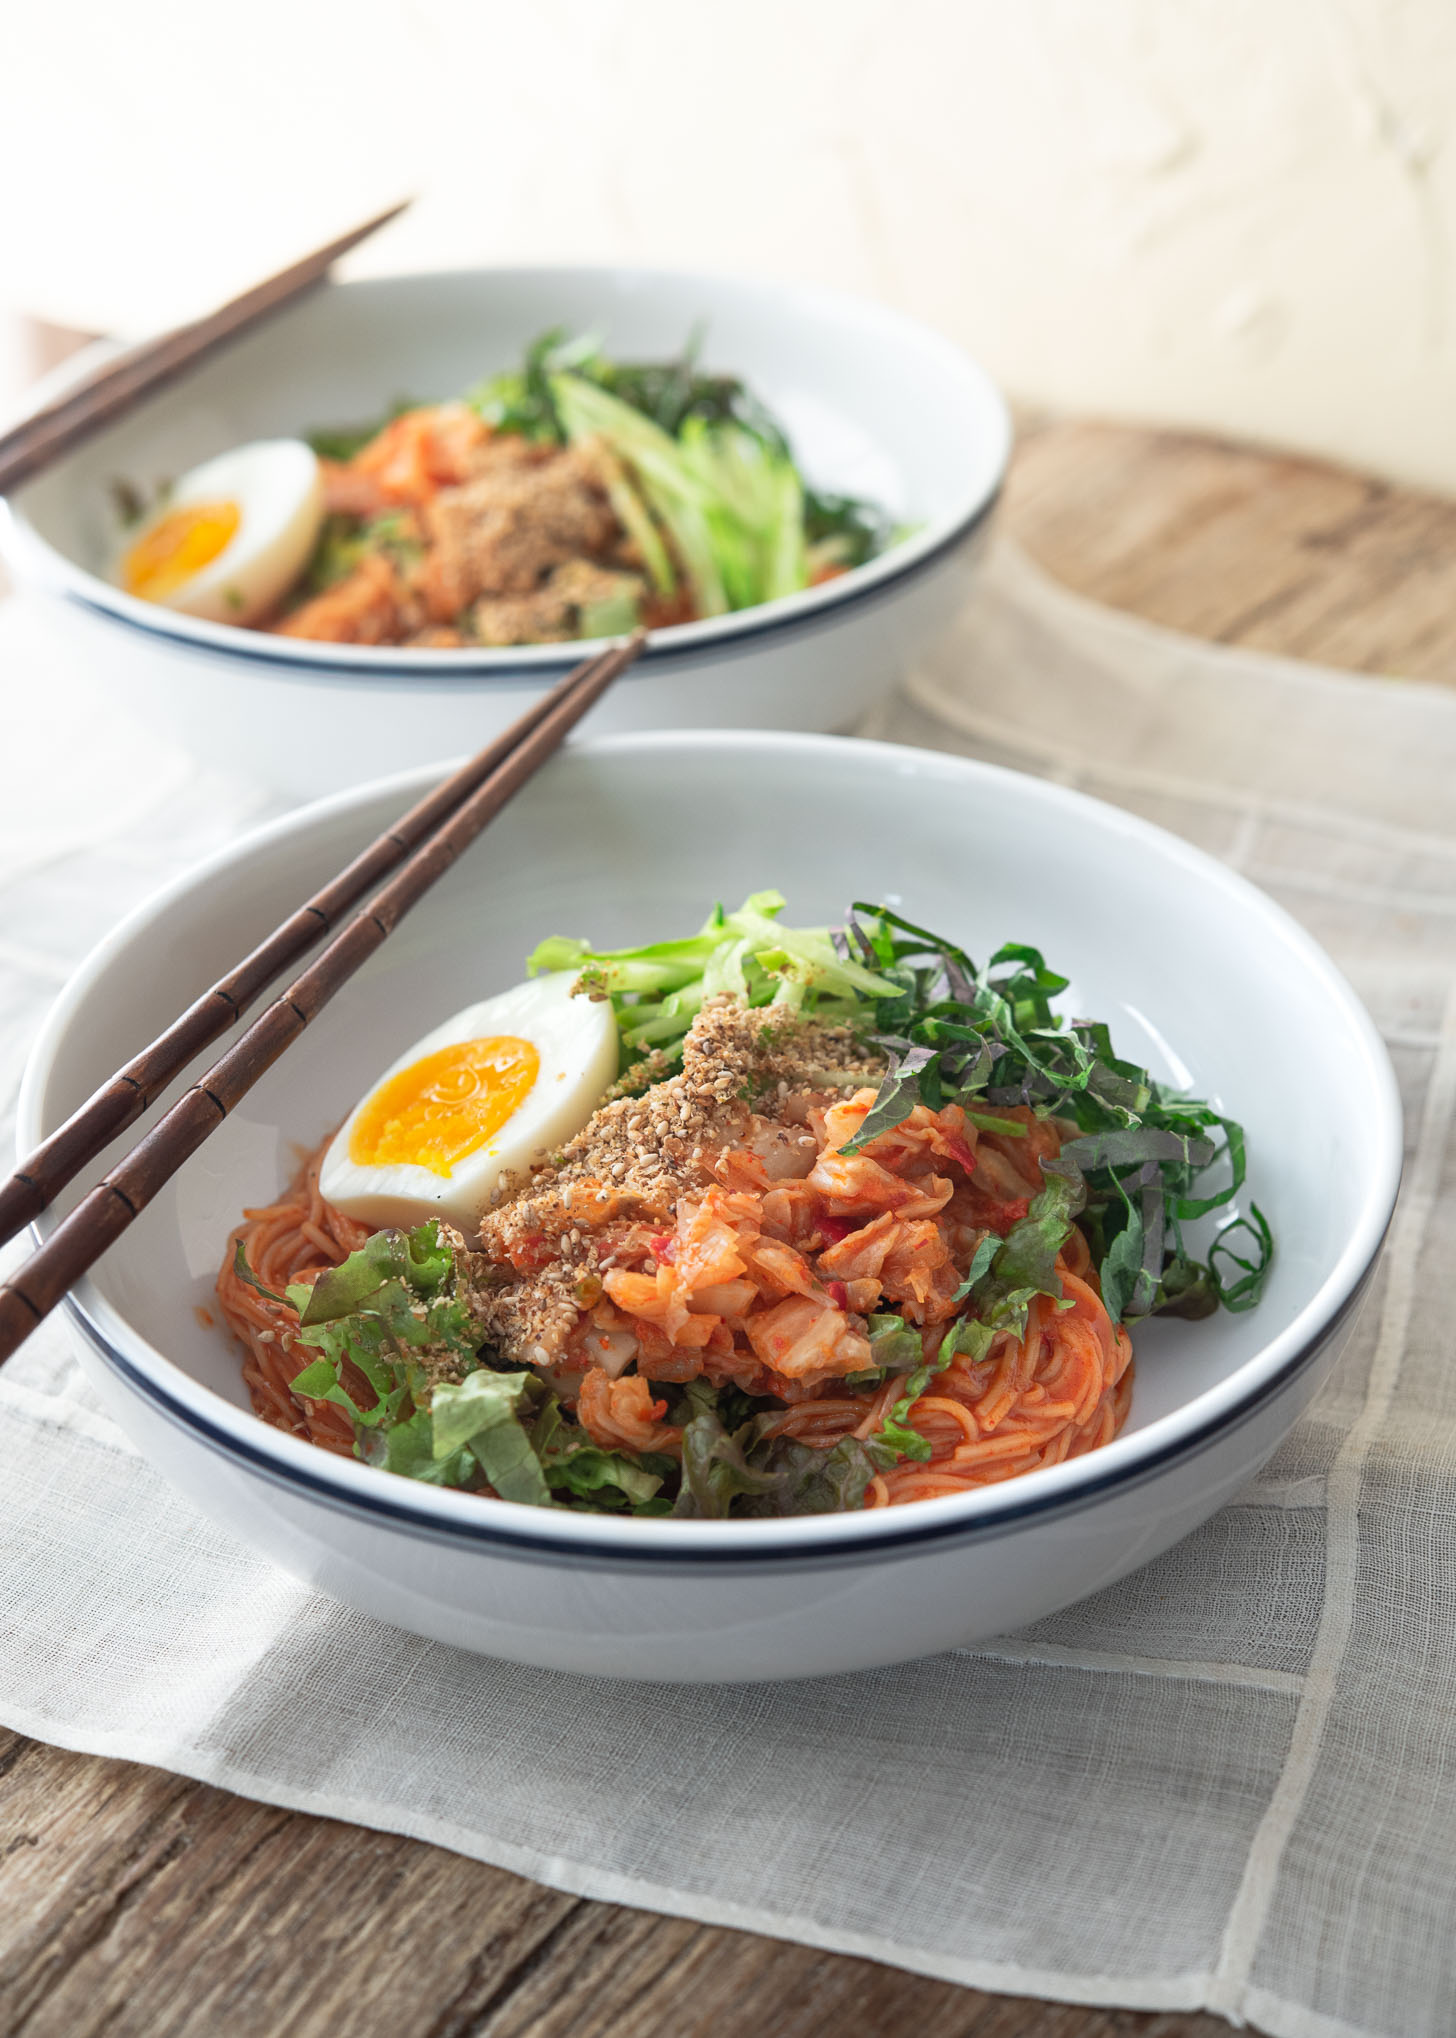 Korean cold noodles (Bibim guksu) garnished with vegetables and egg.